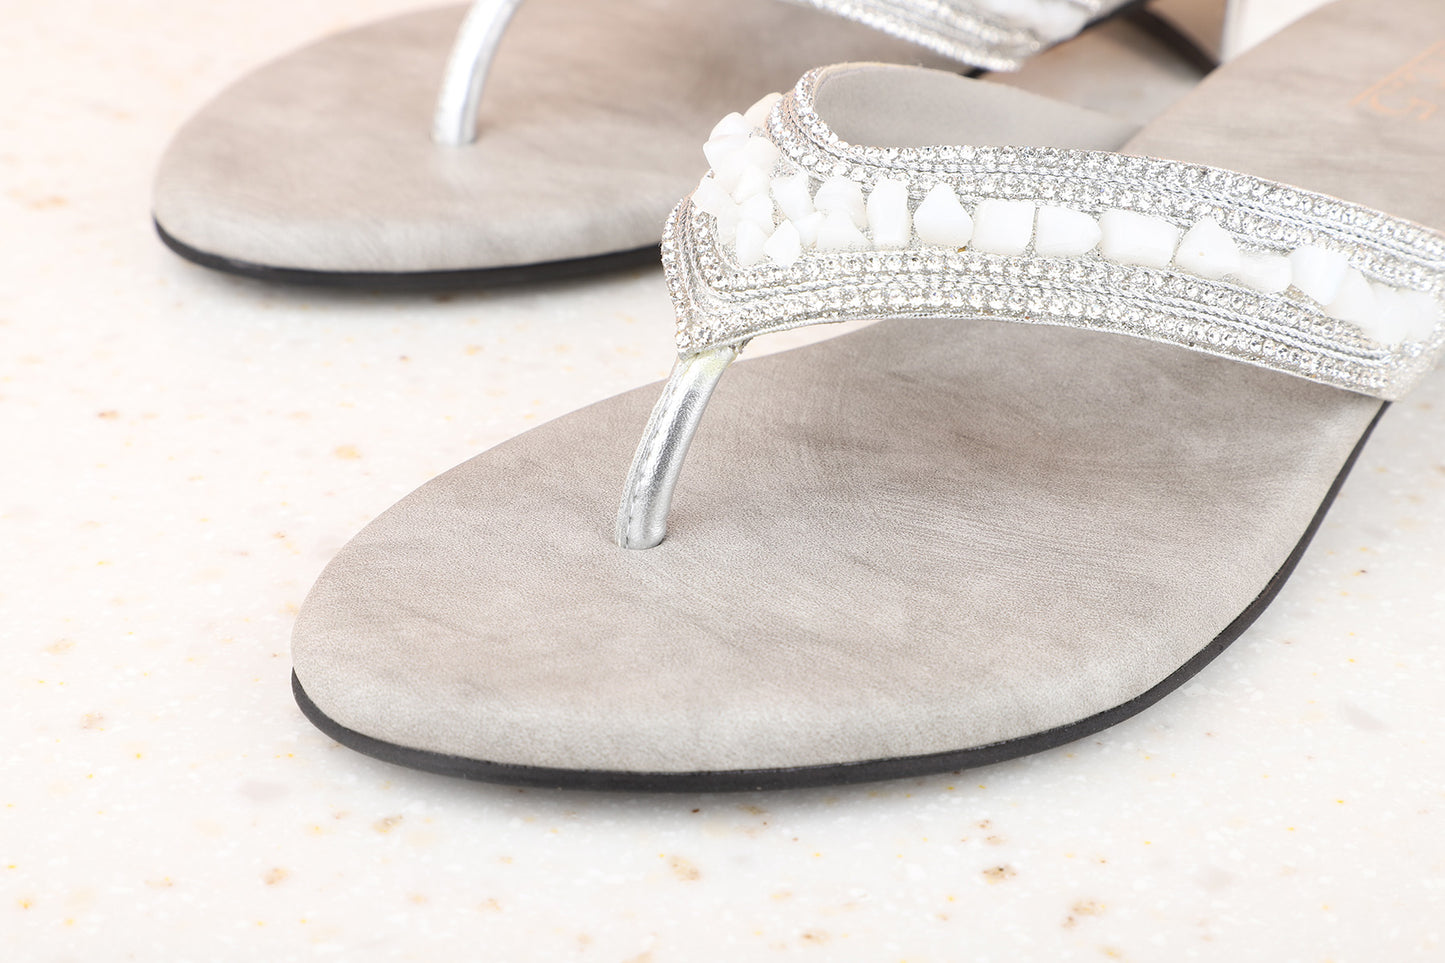 Women Silver Embellished Block Sandals